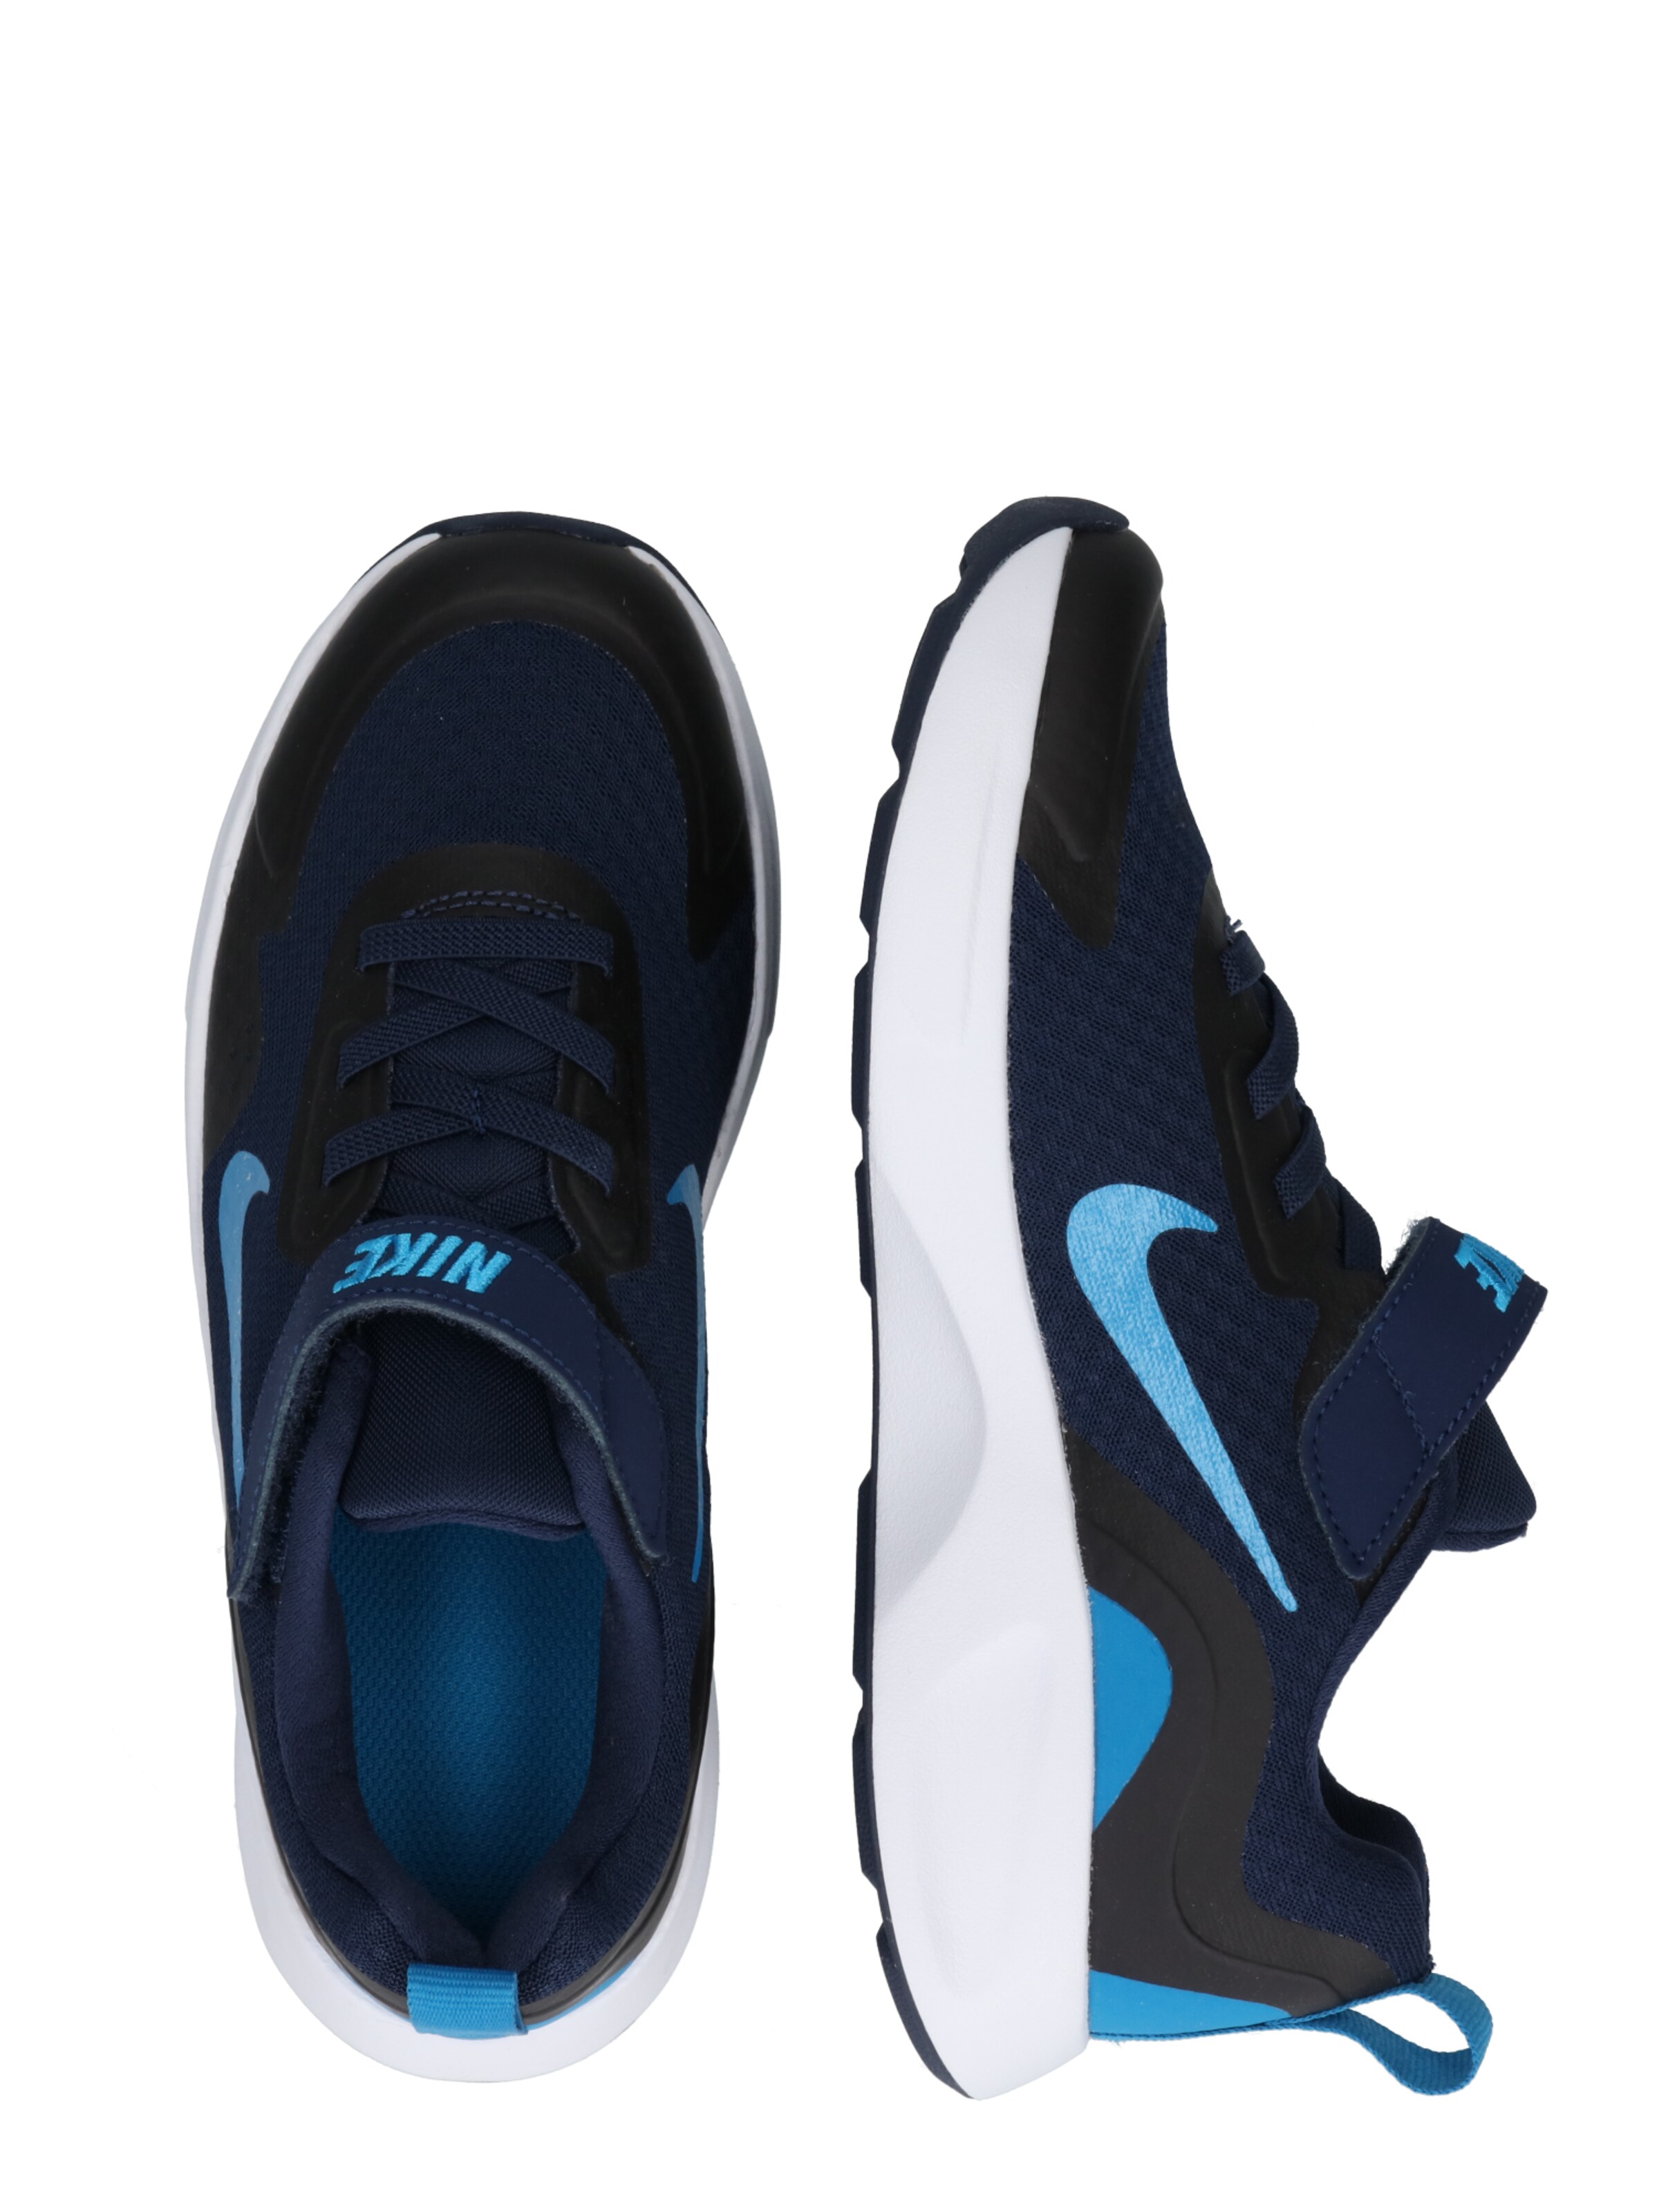 Bimba sbnDL Nike Sportswear Sneaker in Navy, Blu Cielo 